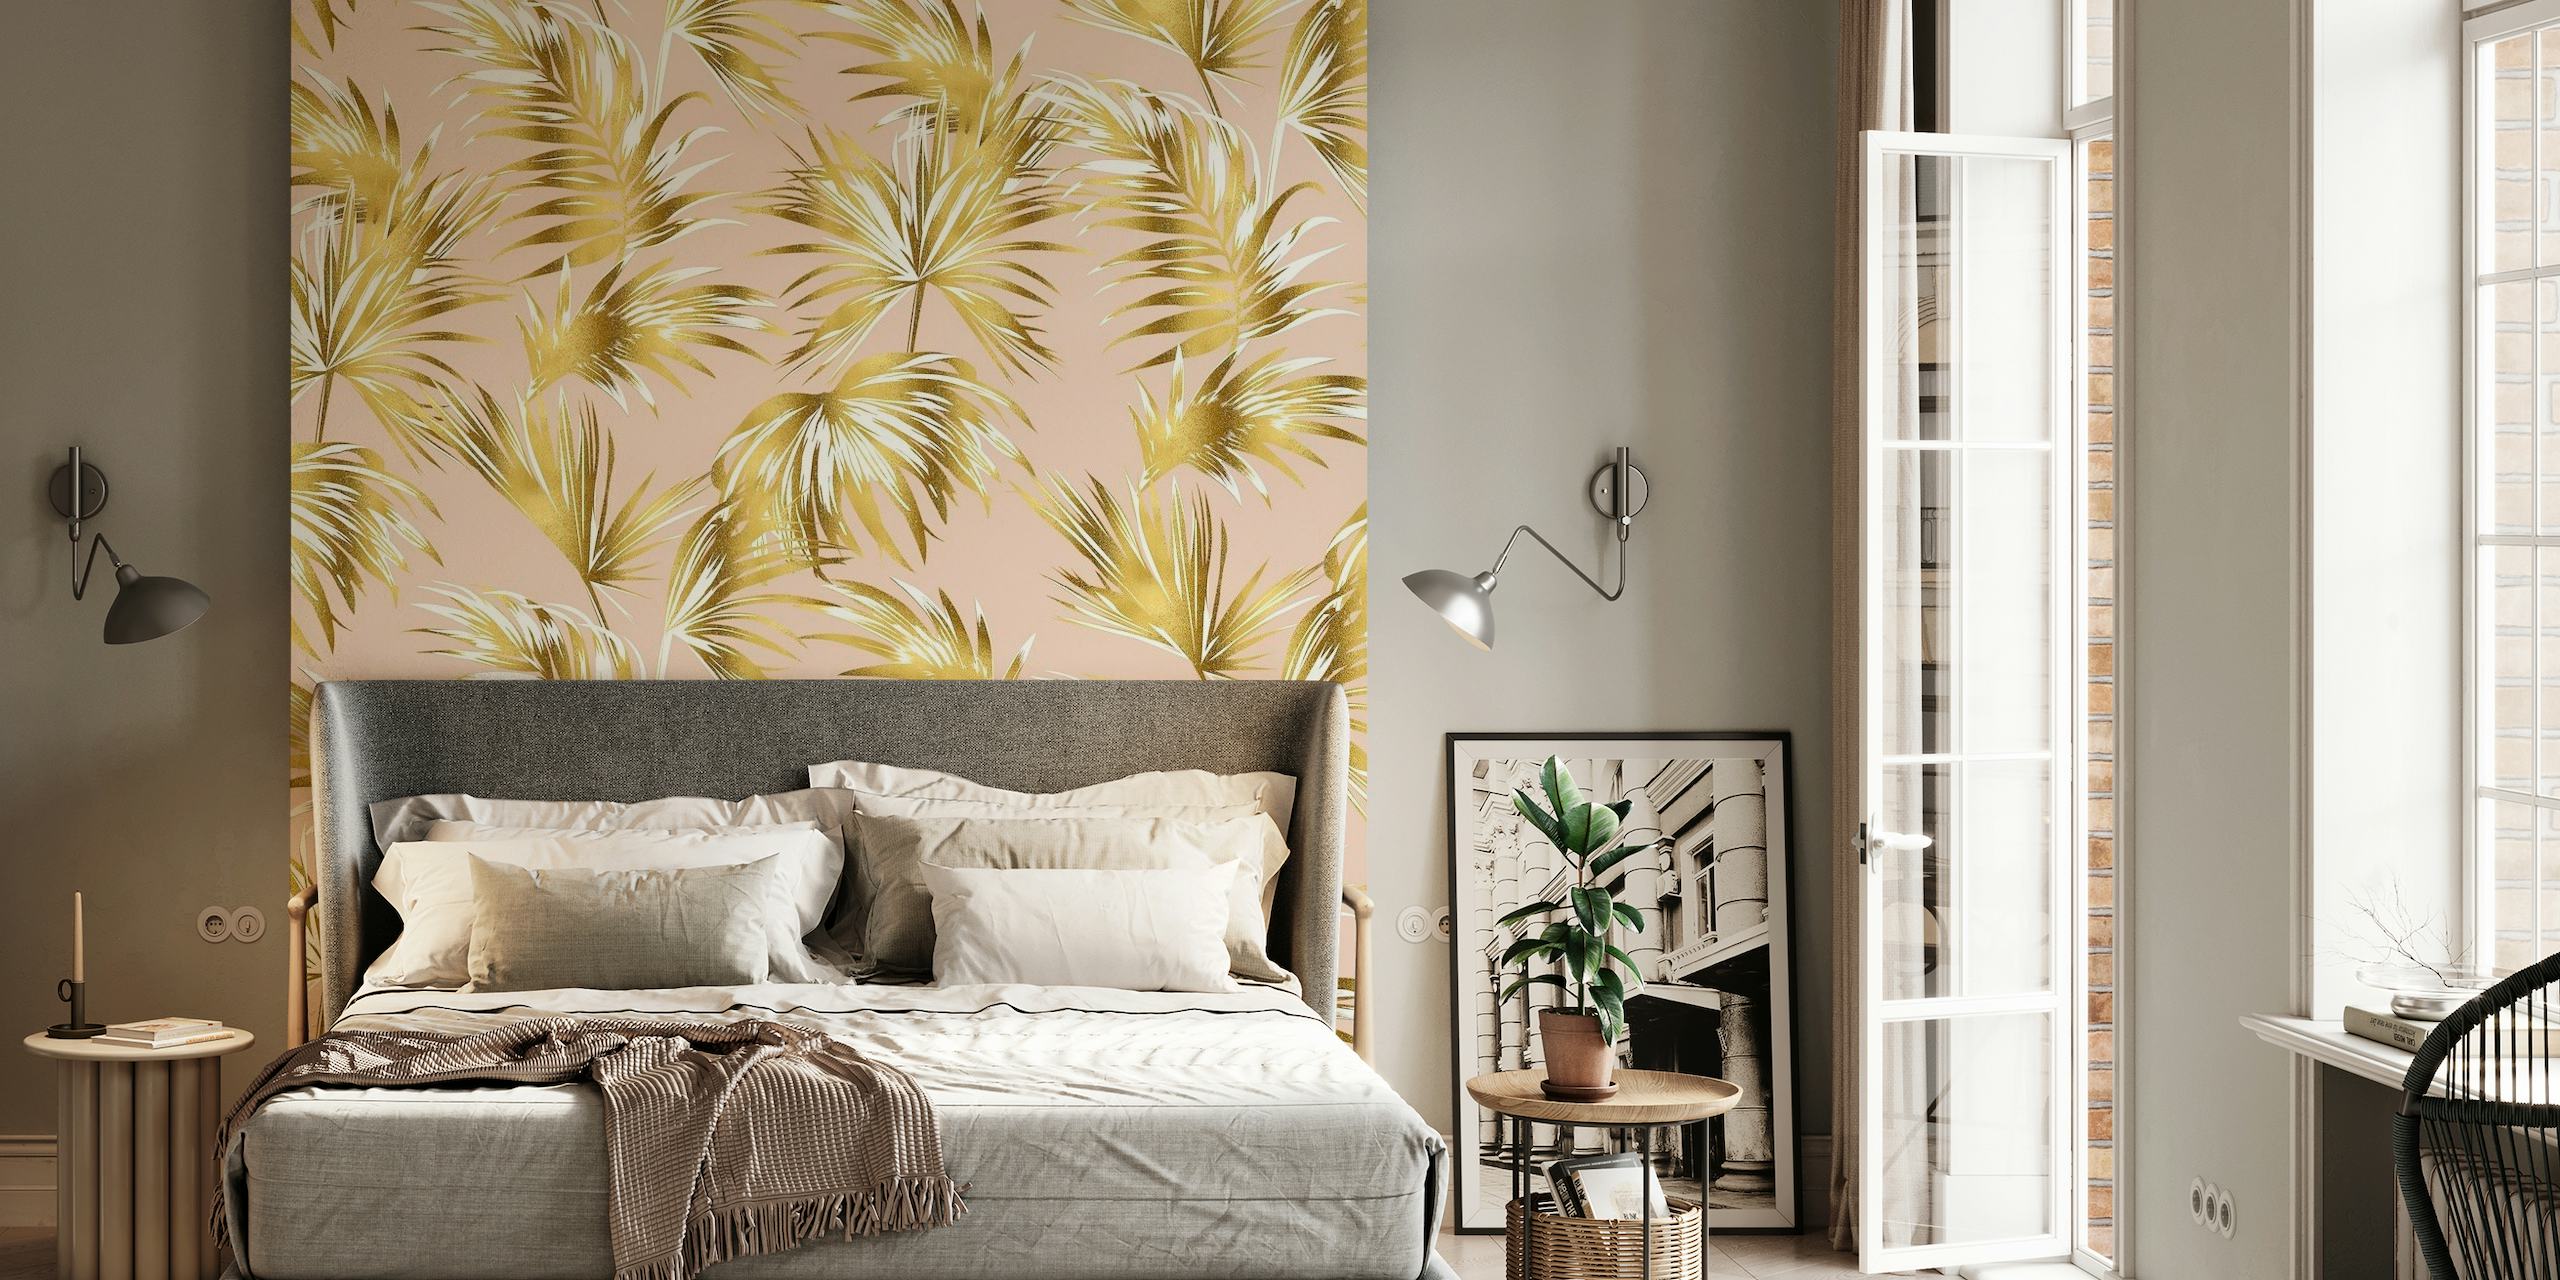 Folhas de palmeira douradas em um fotomural vinílico de fundo rosa